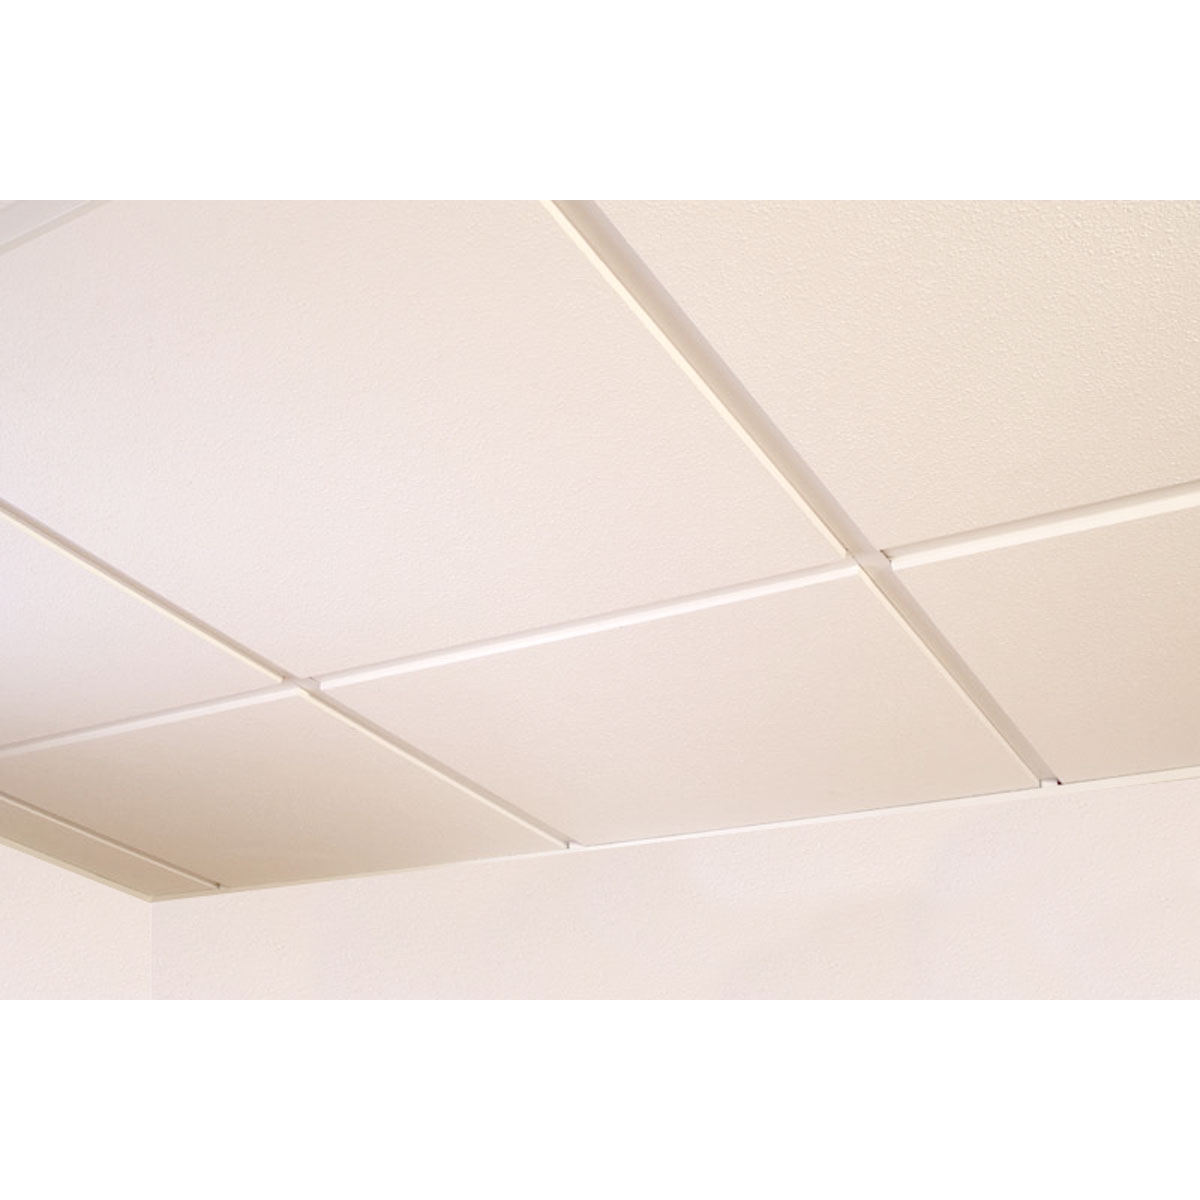 Placa de escayola "lisa" escalonada para techo desmontable 60x60 (Caja 6 ud) - Grupo Unamacor